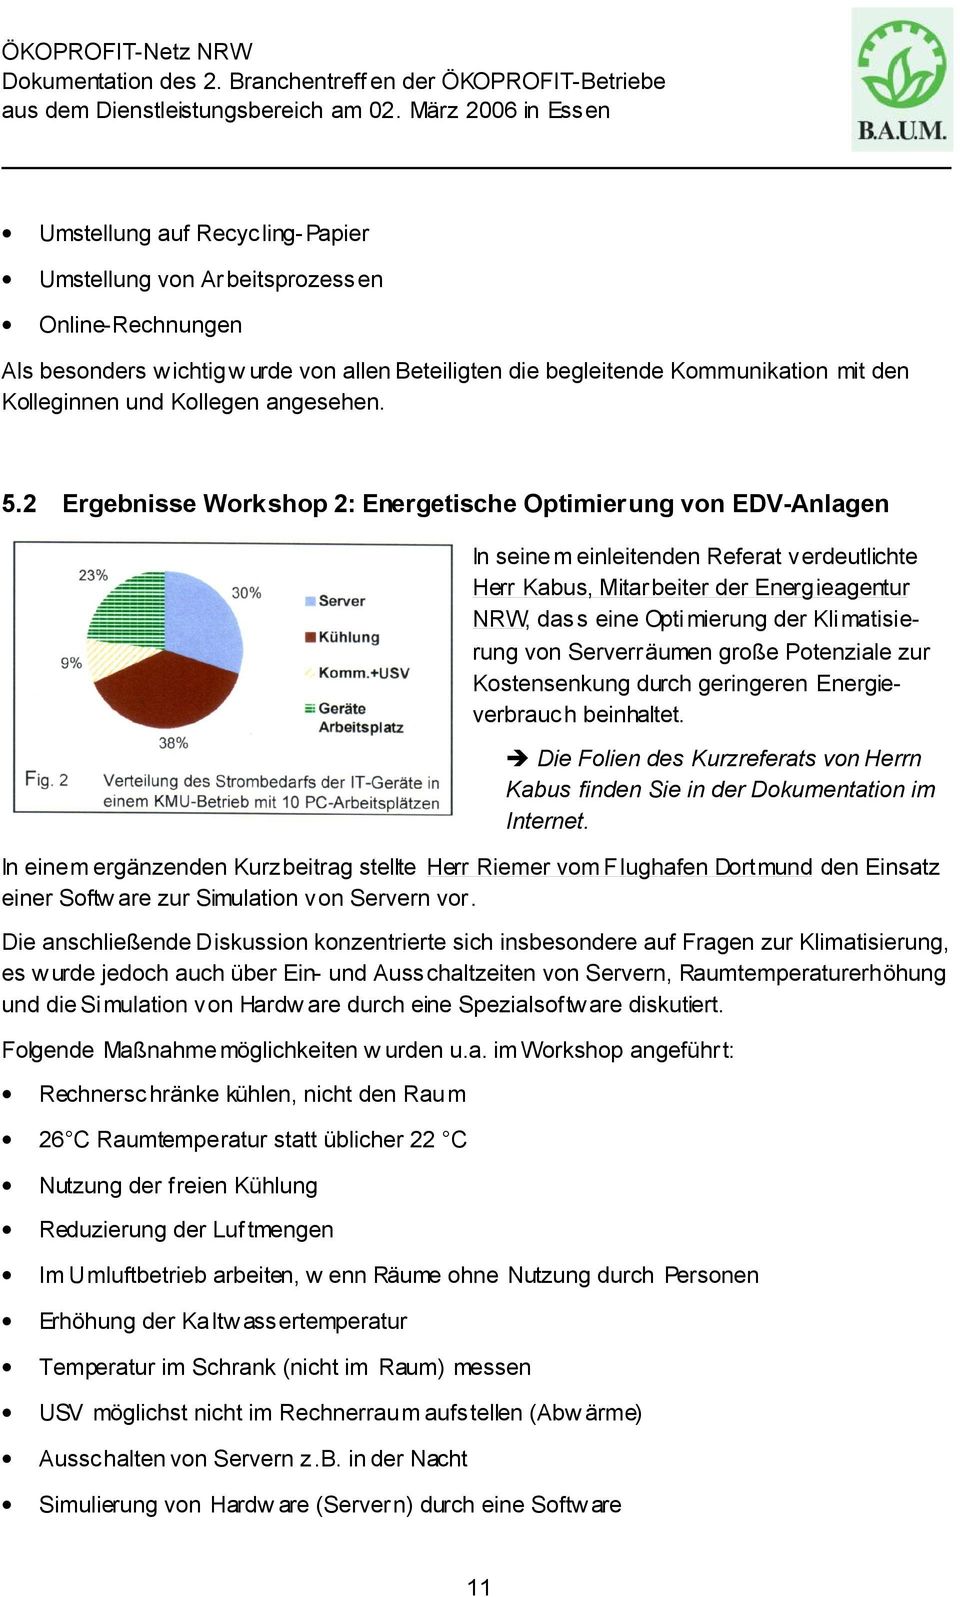 2 Ergebnisse Workshop 2: Energetische Optimierung von EDV-Anlagen In seine m einleitenden Referat verdeutlichte Herr Kabus, Mitarbeiter der Energieagentur NRW, dass eine Opti mierung der